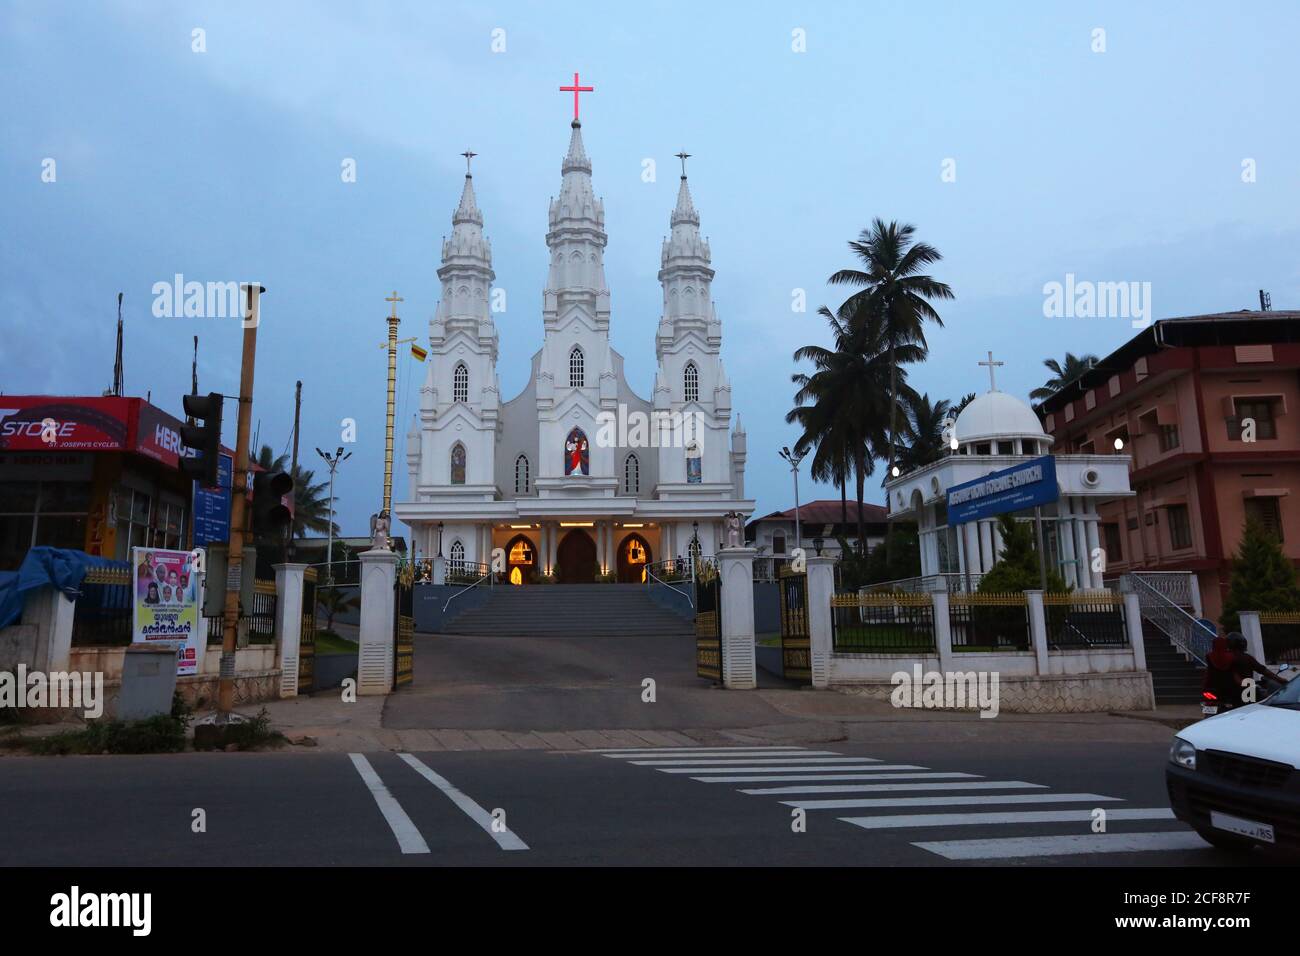 Assumption Forane Church facade, Sultan Bathery, Kerala, India Stock Photo